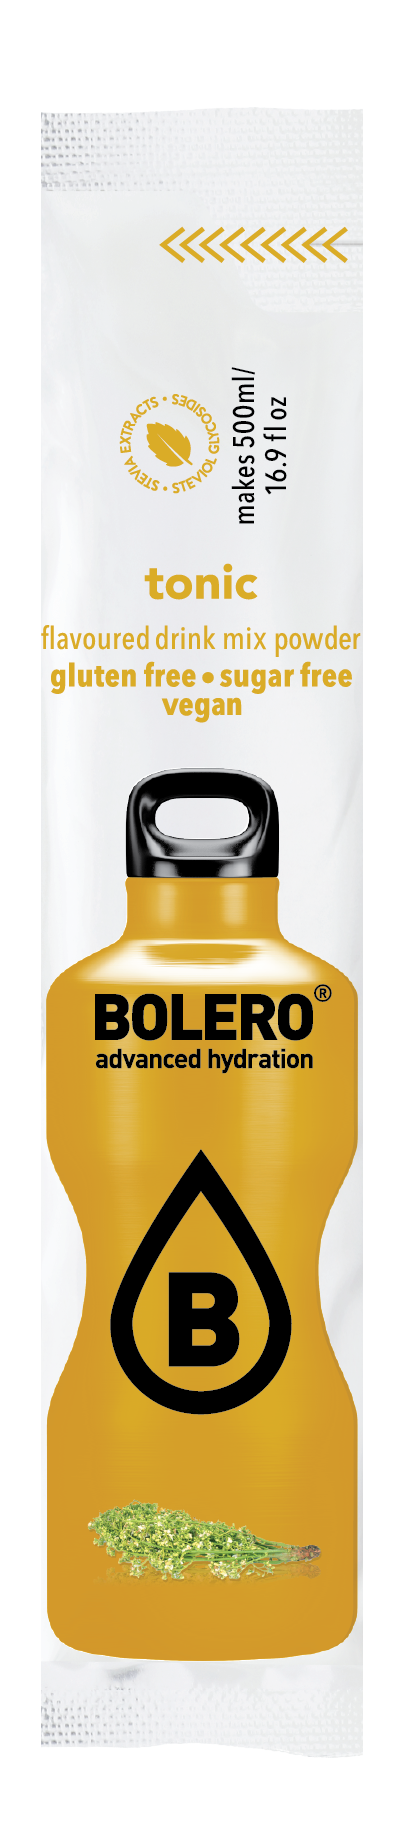 Bolero Advanced Hydration - Tonic Small Sachets (Box of 12 Small Sachets)